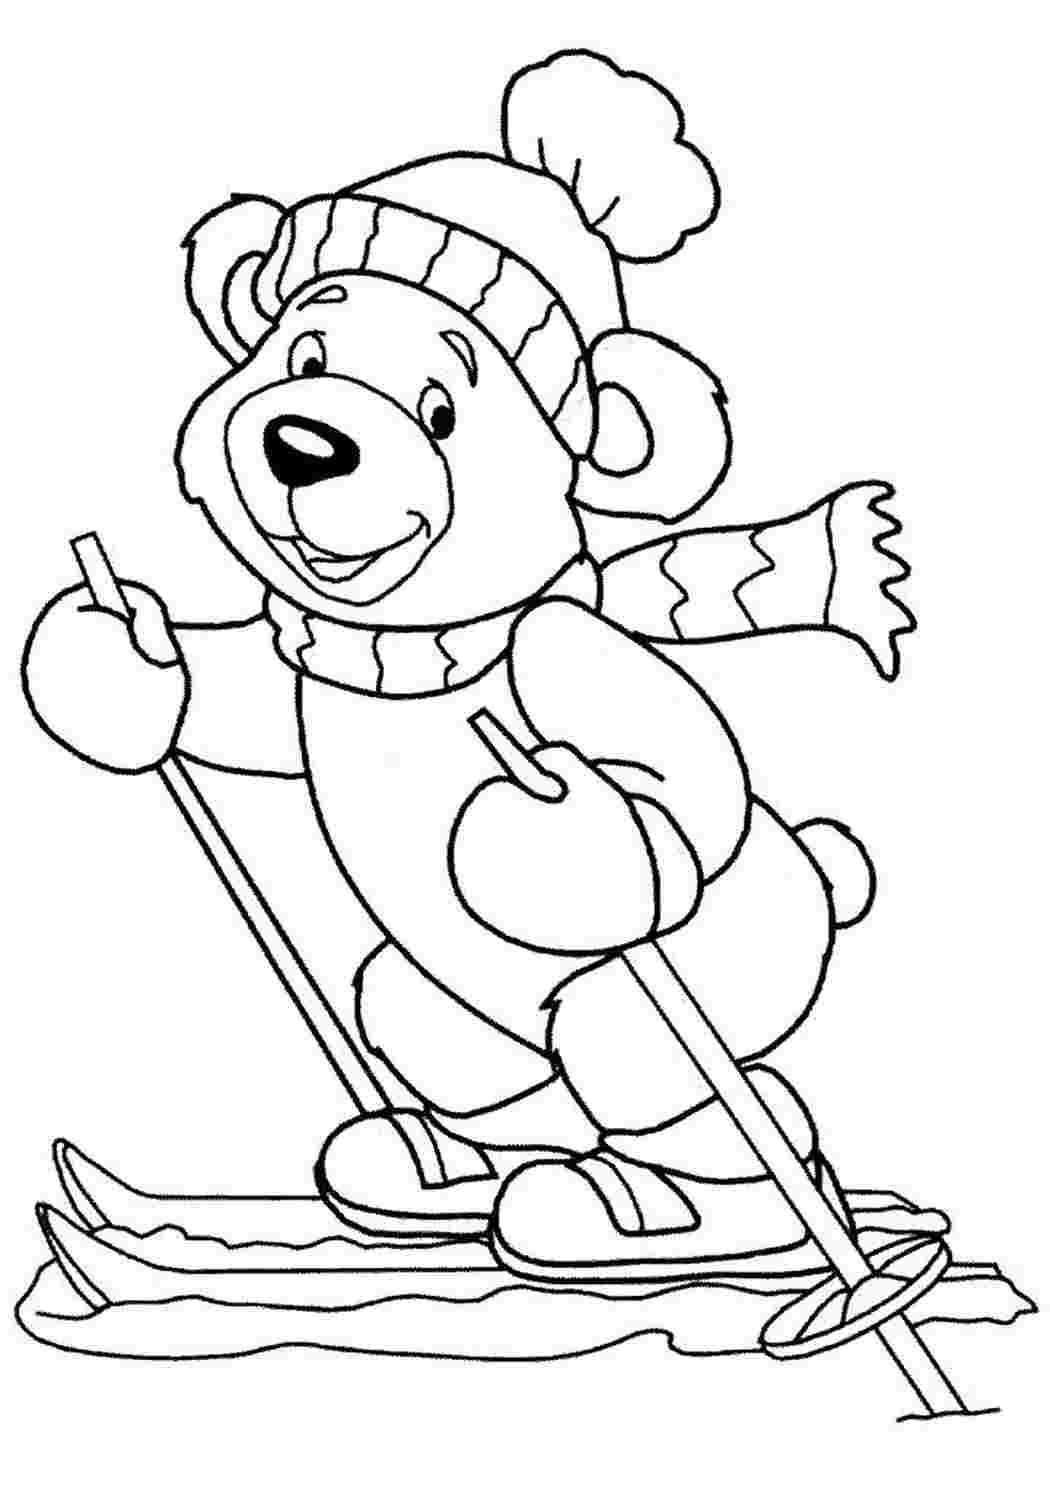 Раскраски Раскраска Раскраска Тедди катается на лыжах распечатать. Сайт с раскрасками. Раскраска Раскраска Тедди катается на лыжах распечатать. Красивые раскраски.